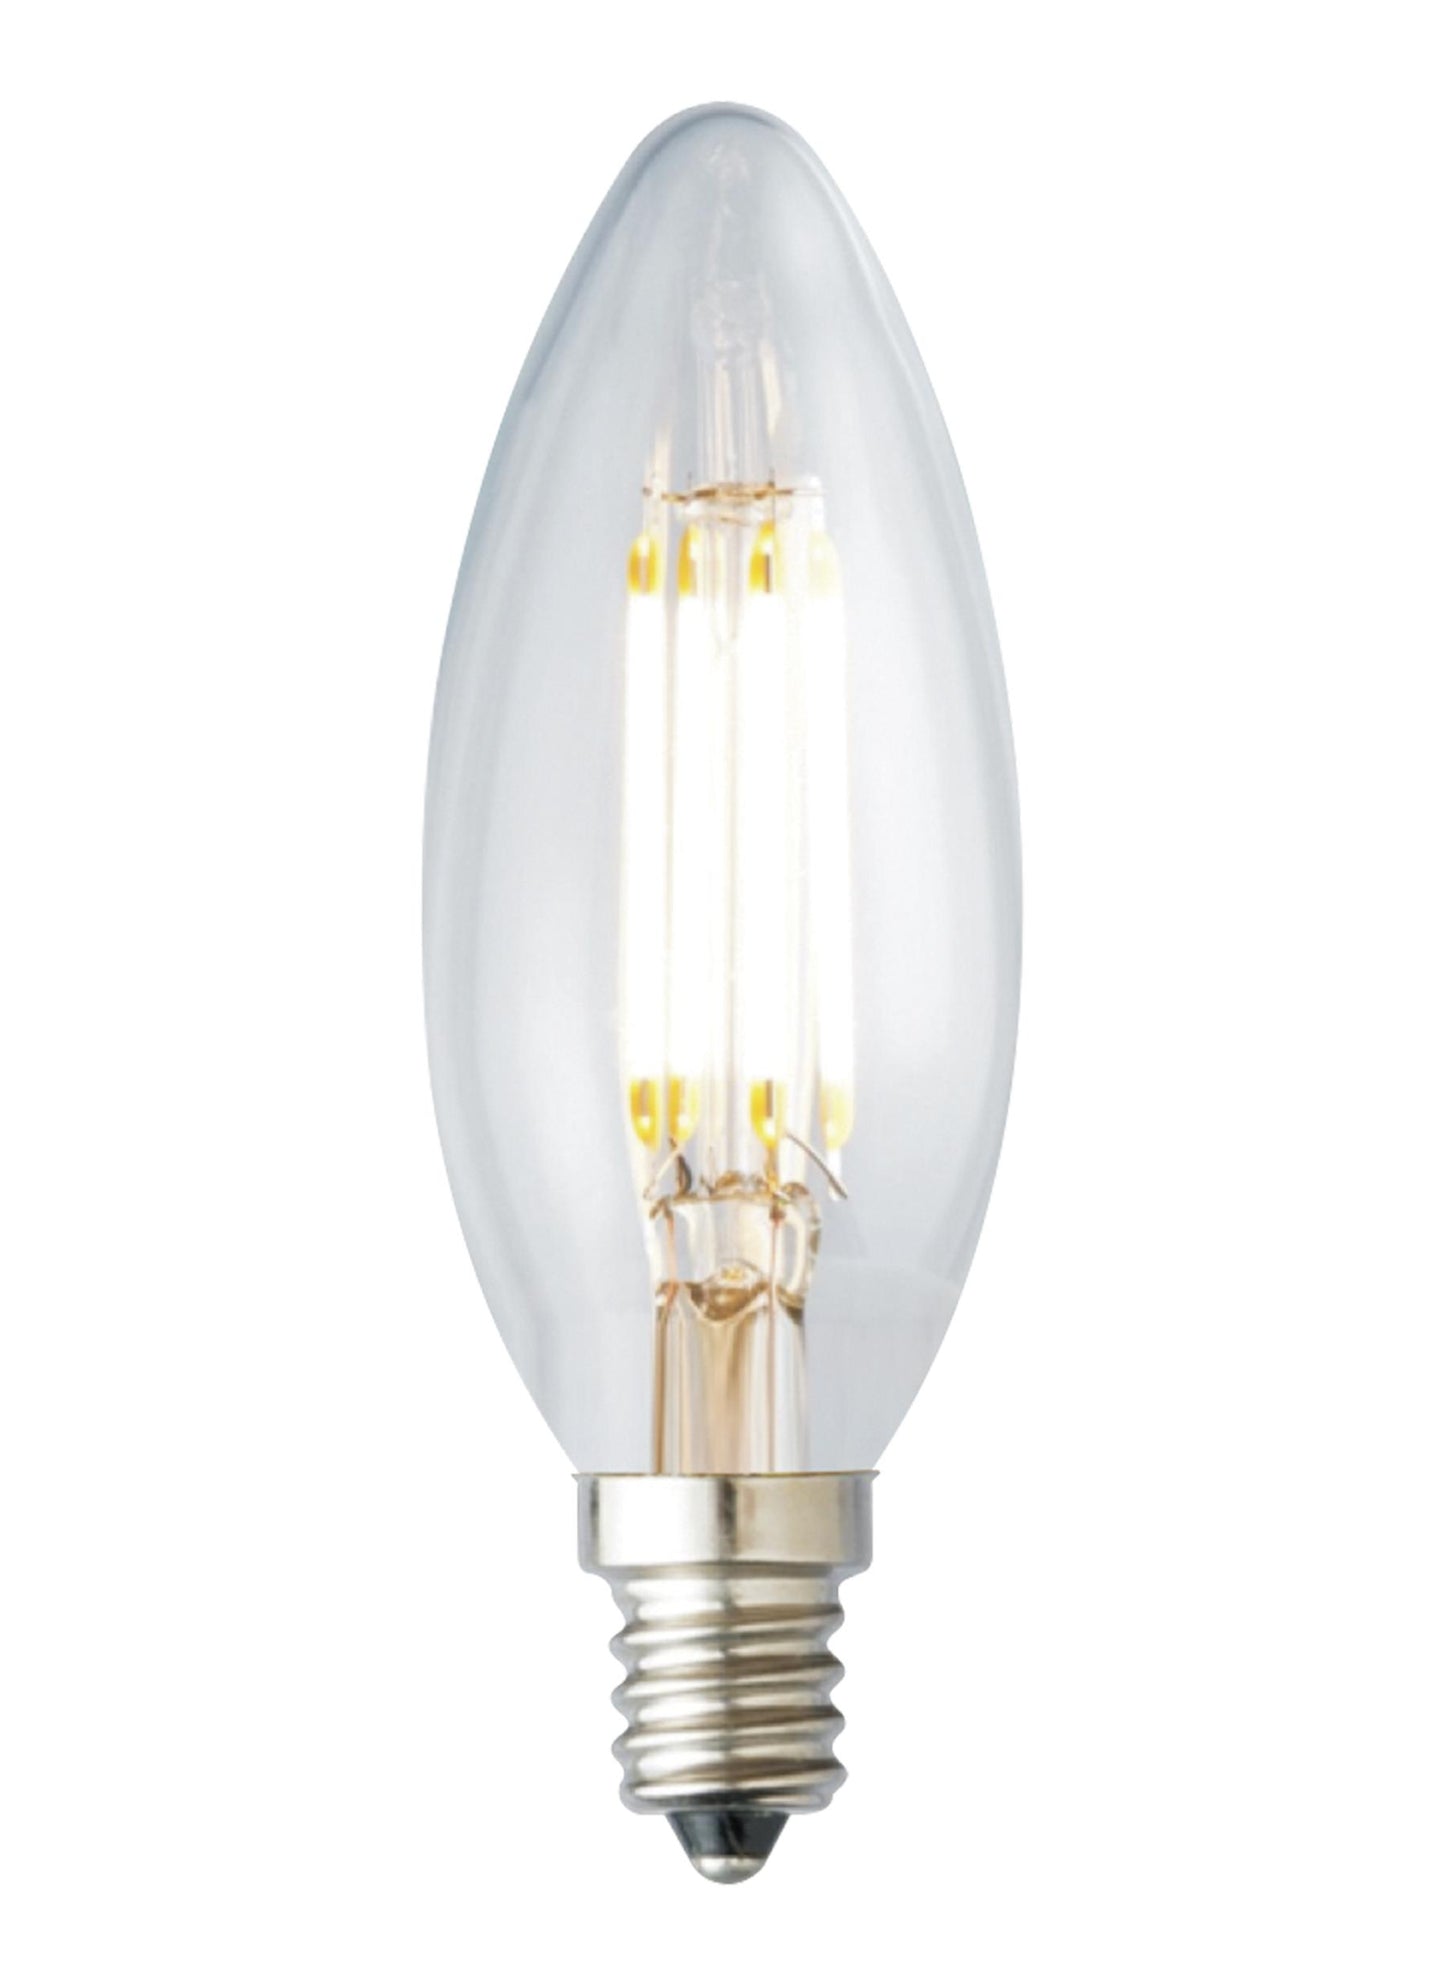 LED Lamp 3.5W B10 2700K Bulb